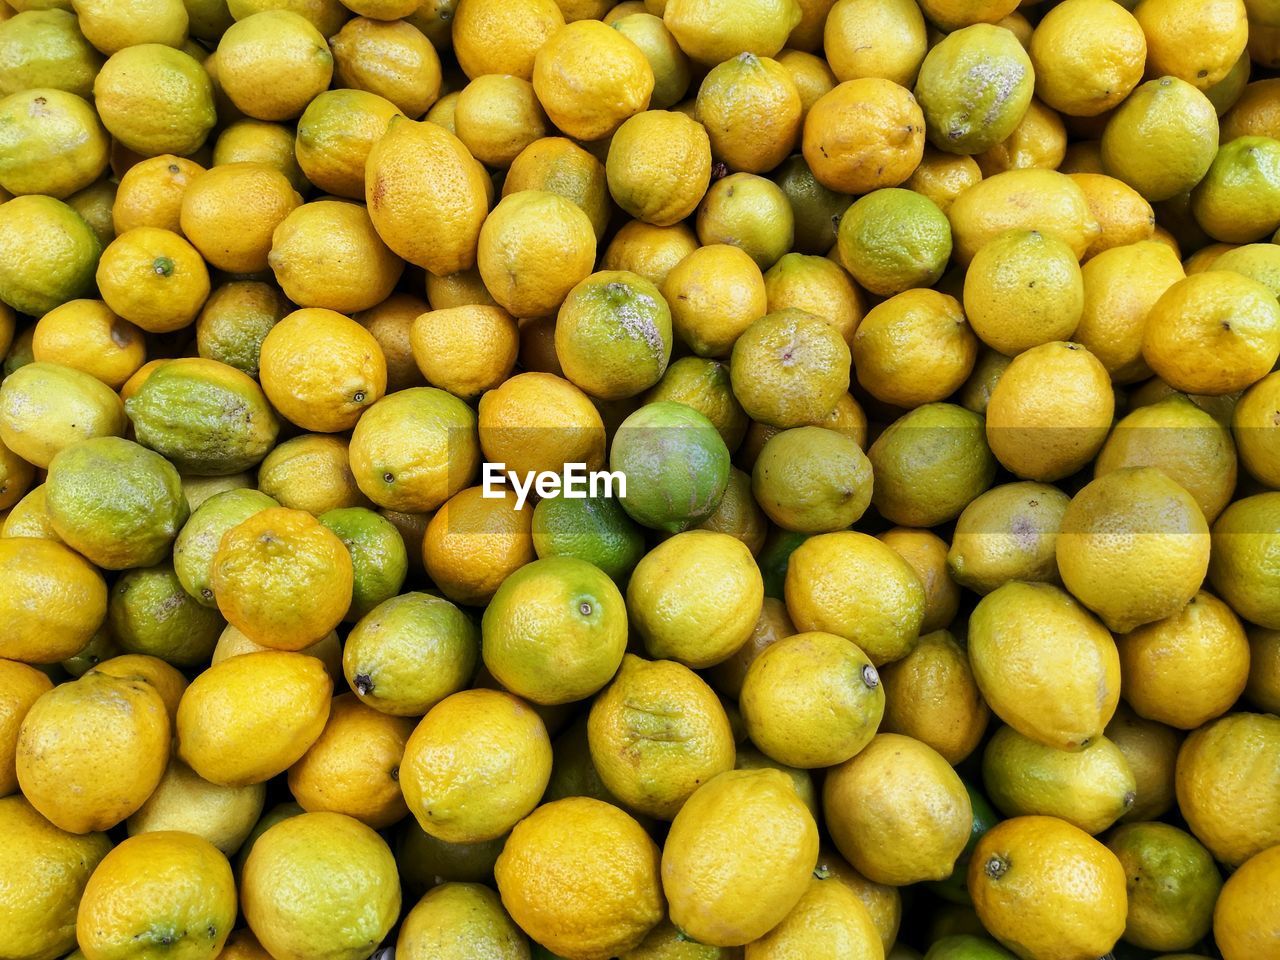 Green and yellow lemons at market